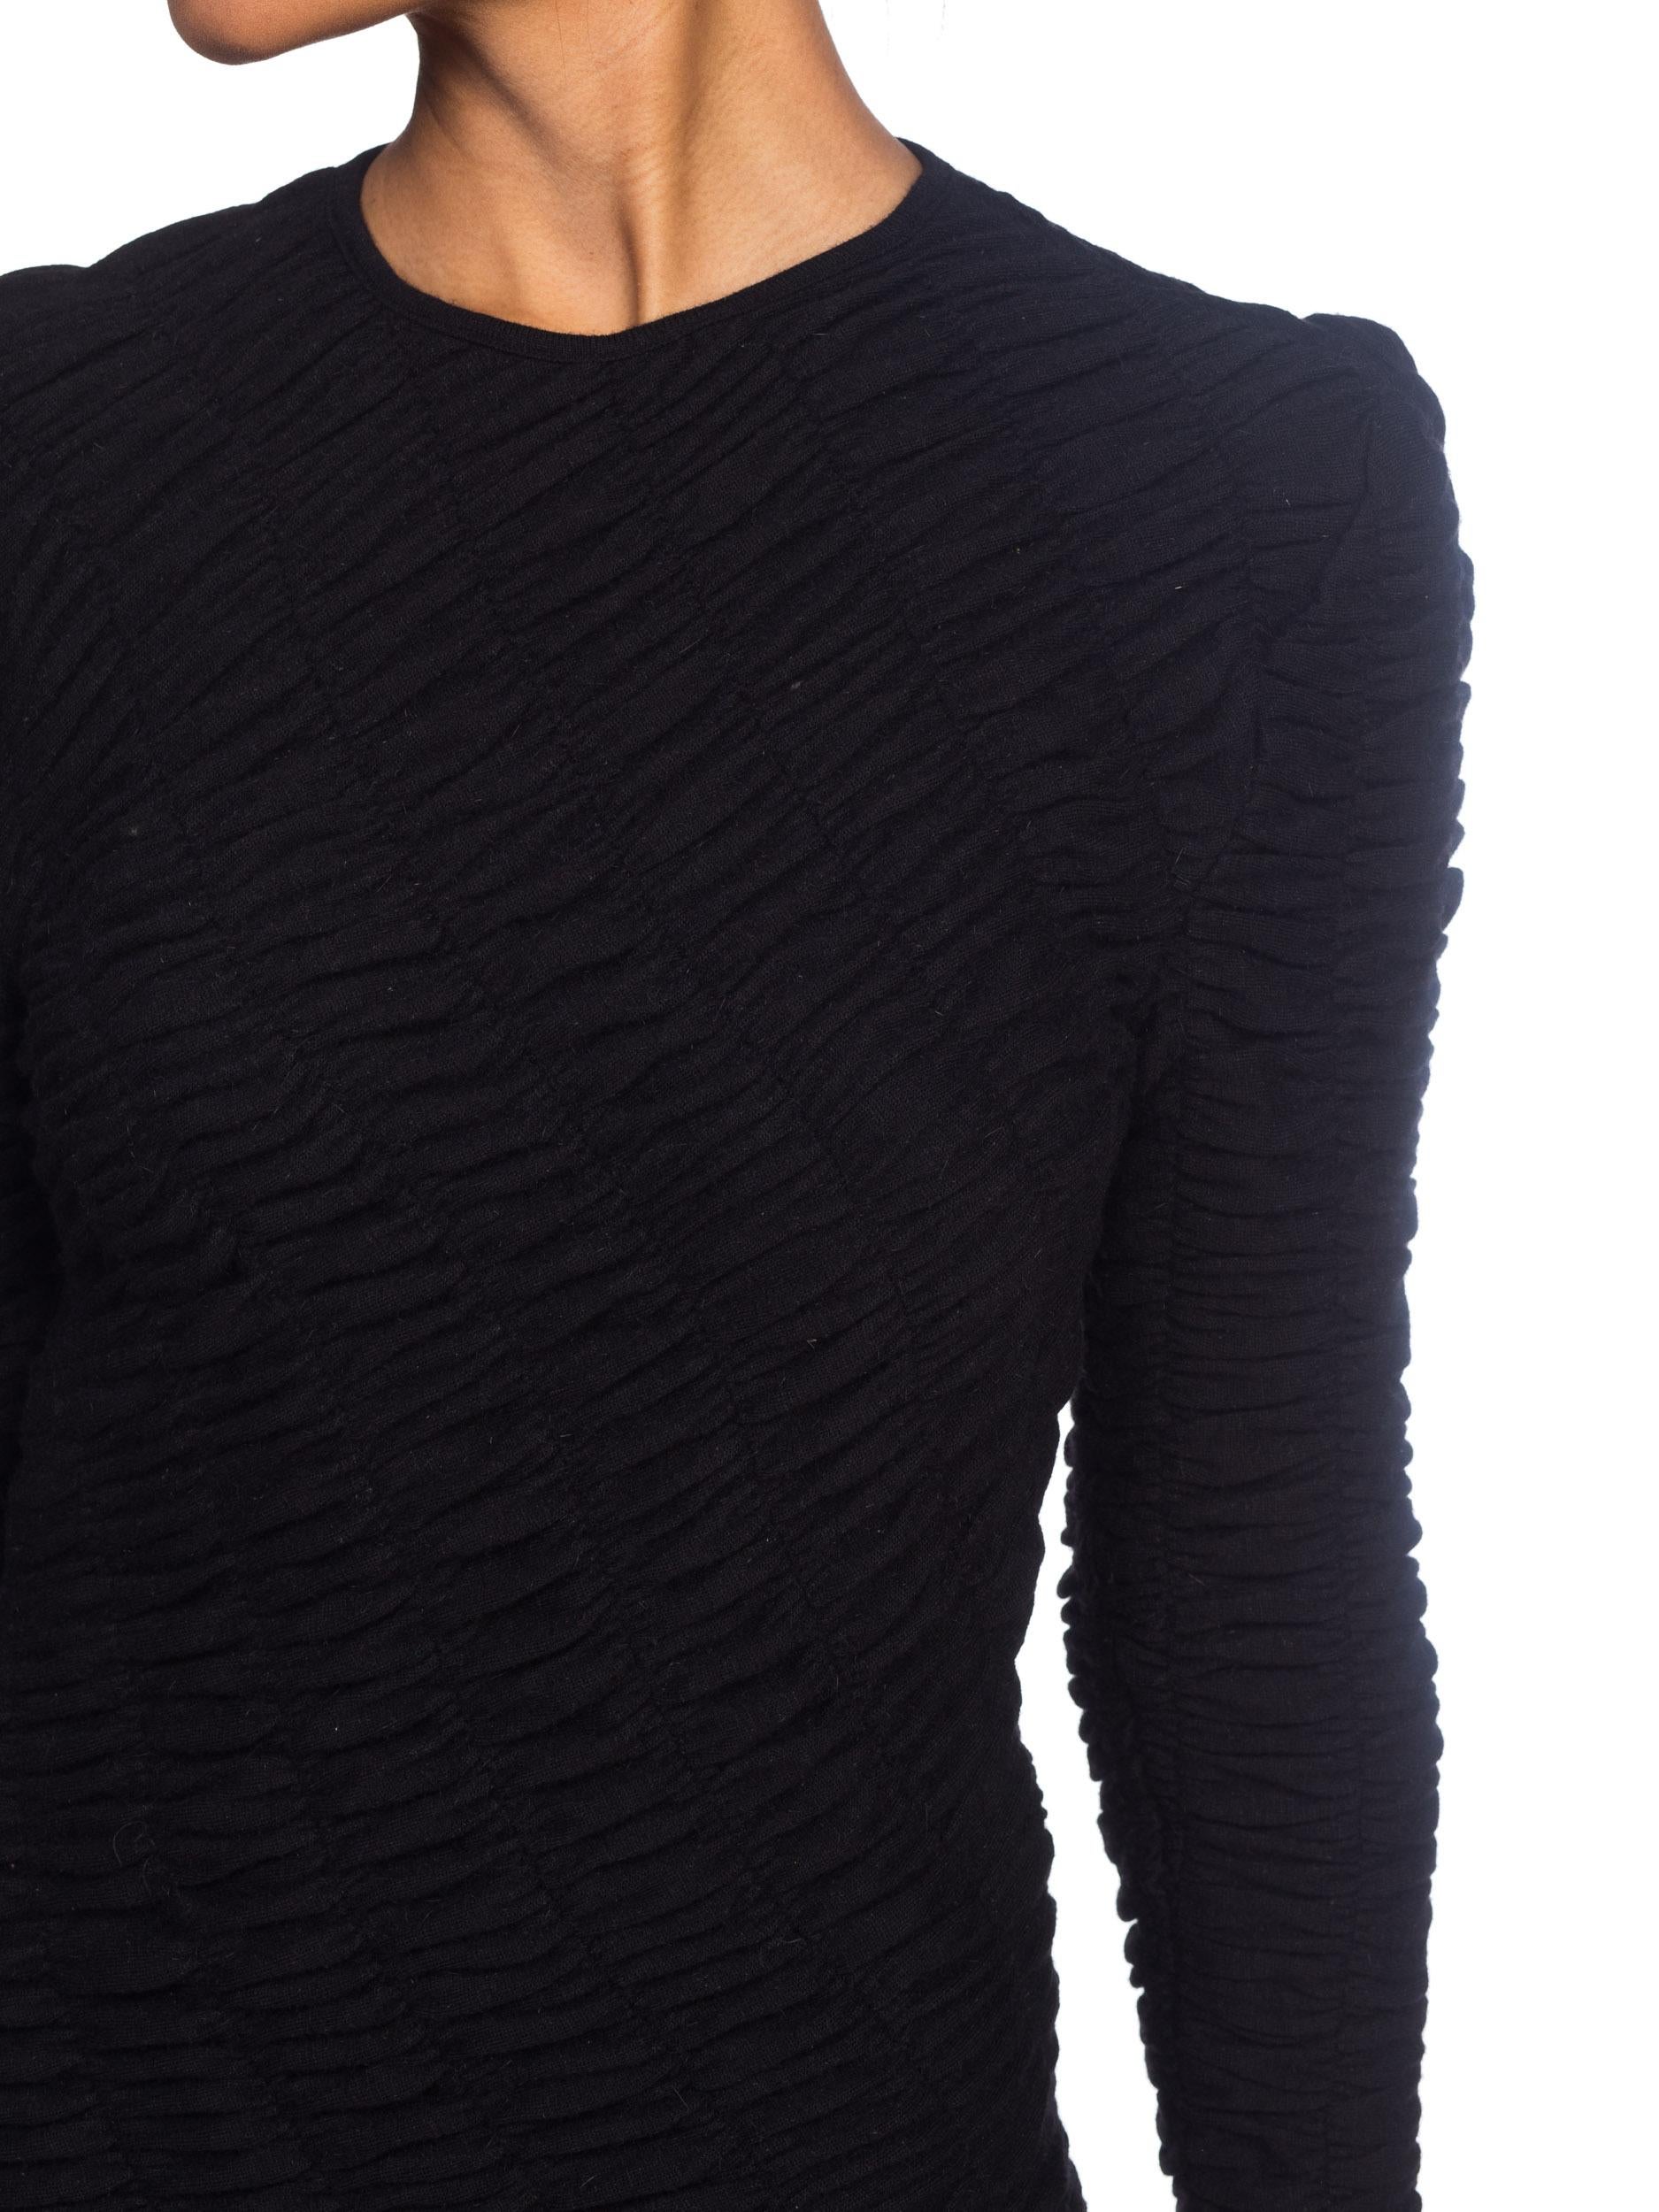 Women's 1980S LOUIS FERAUD Black Wool Jersey Long Sleeve Ruched Sweater Dress